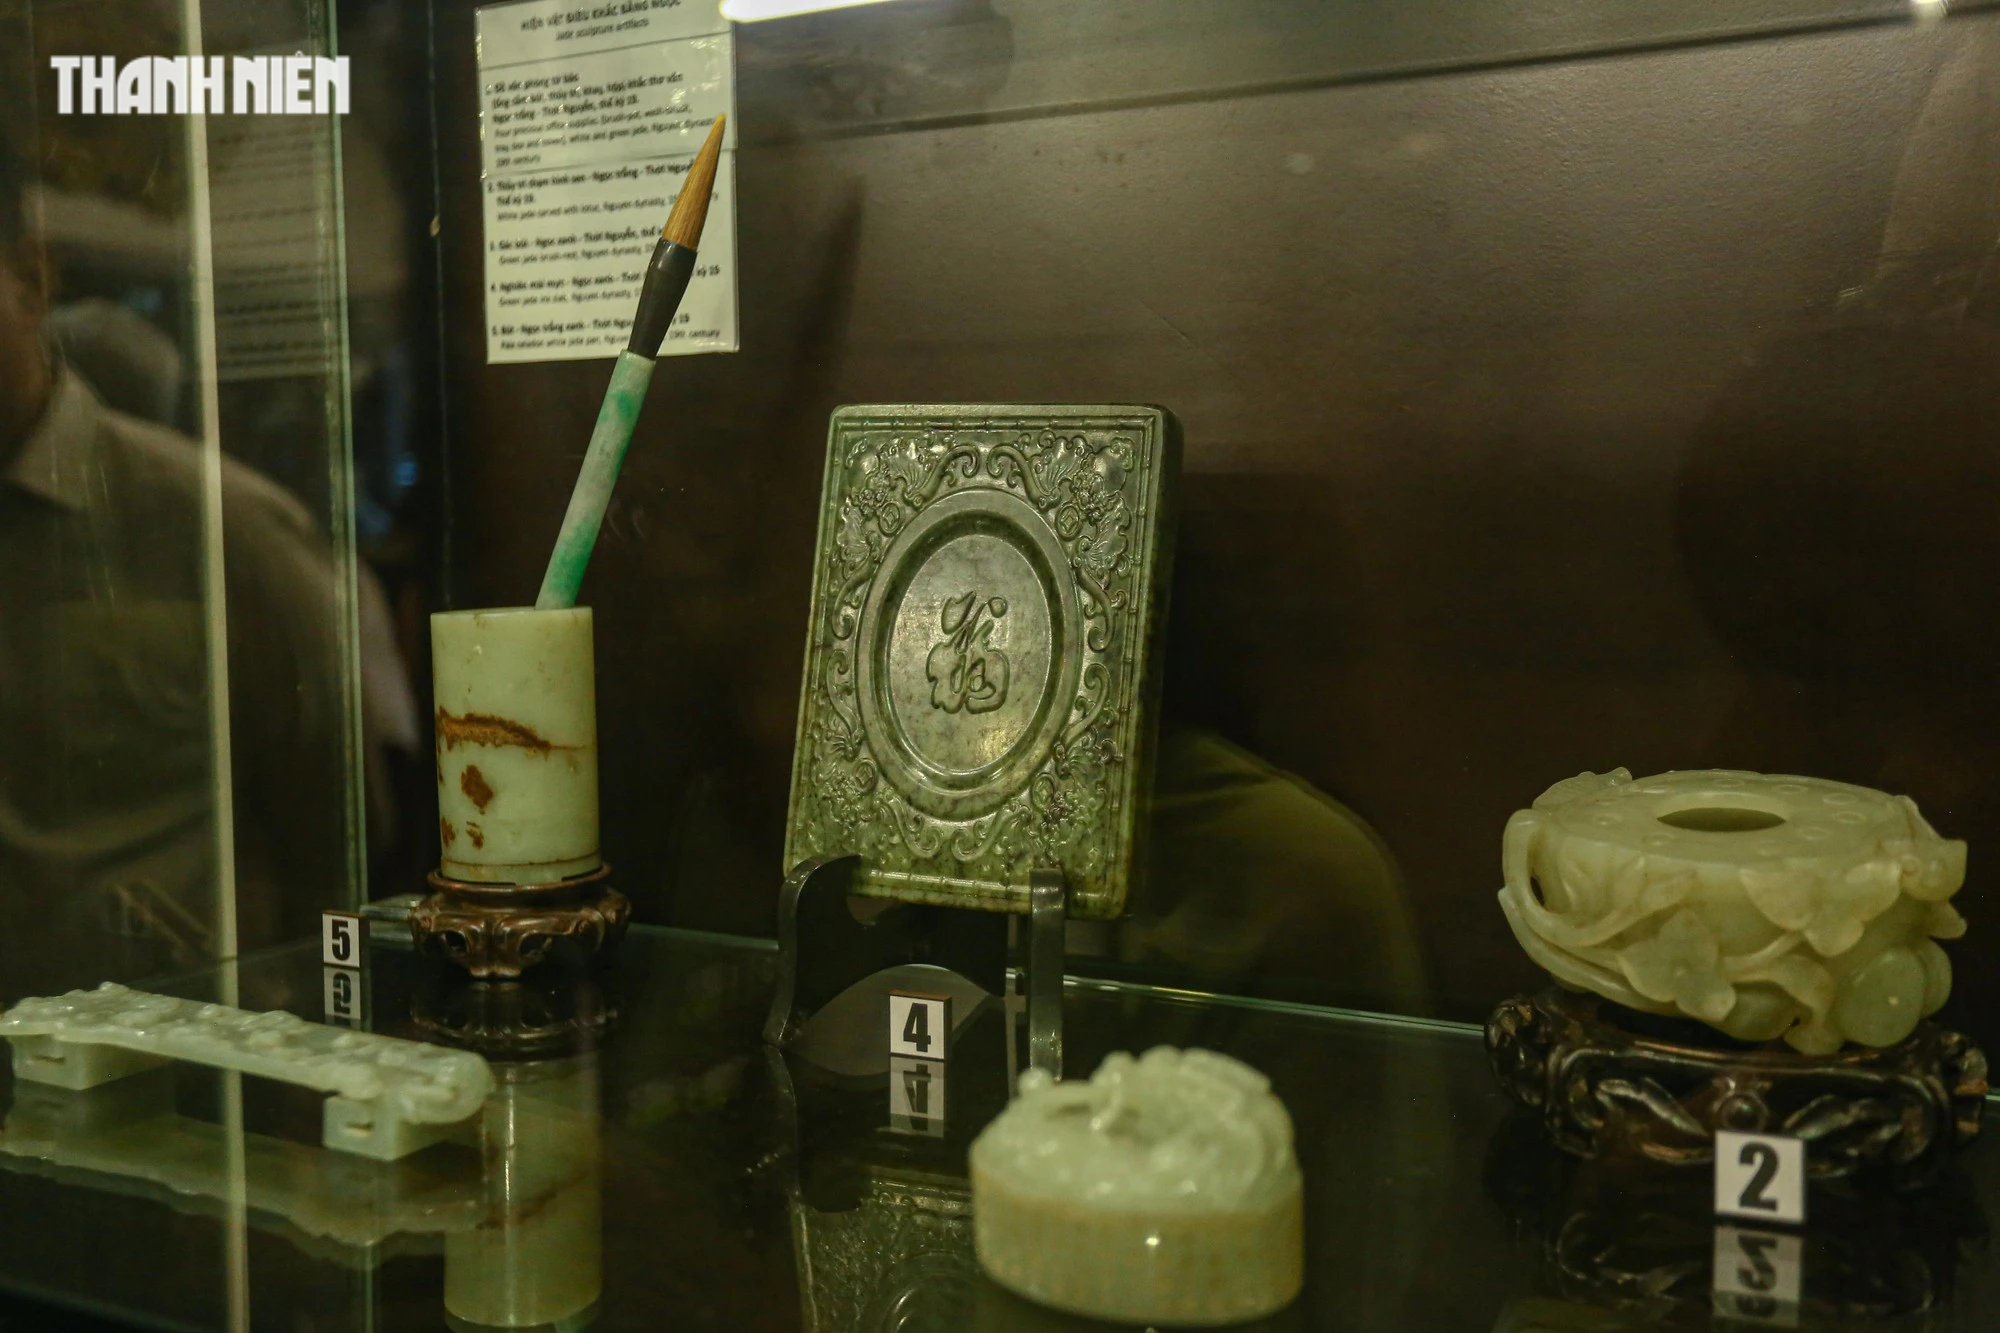 Chiêm ngưỡng hơn 70 món ngọc quý thời Nguyễn đang được trưng bày tại Huế - Ảnh 5.